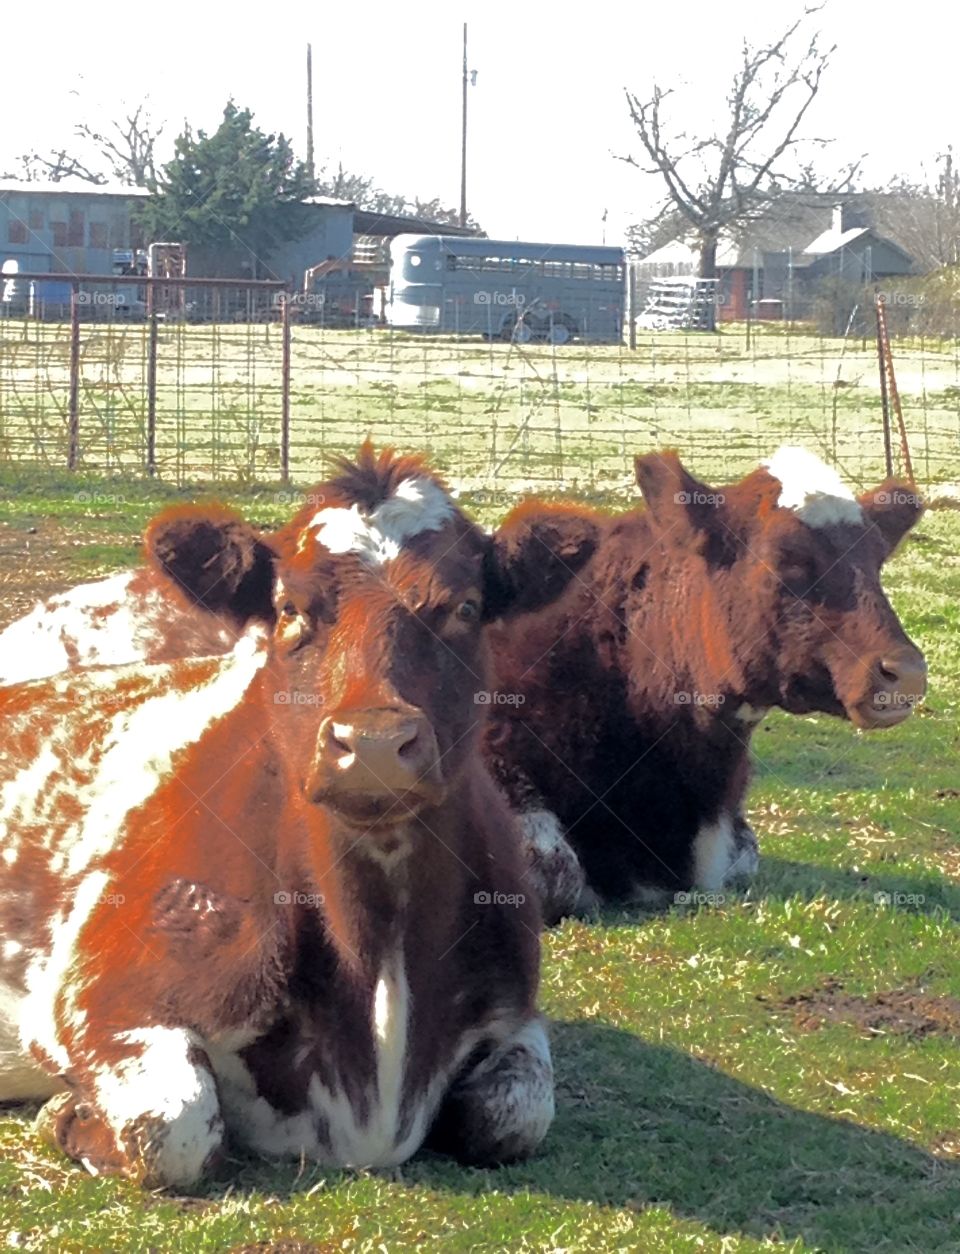 Big fat Short Horn cows in Texas.